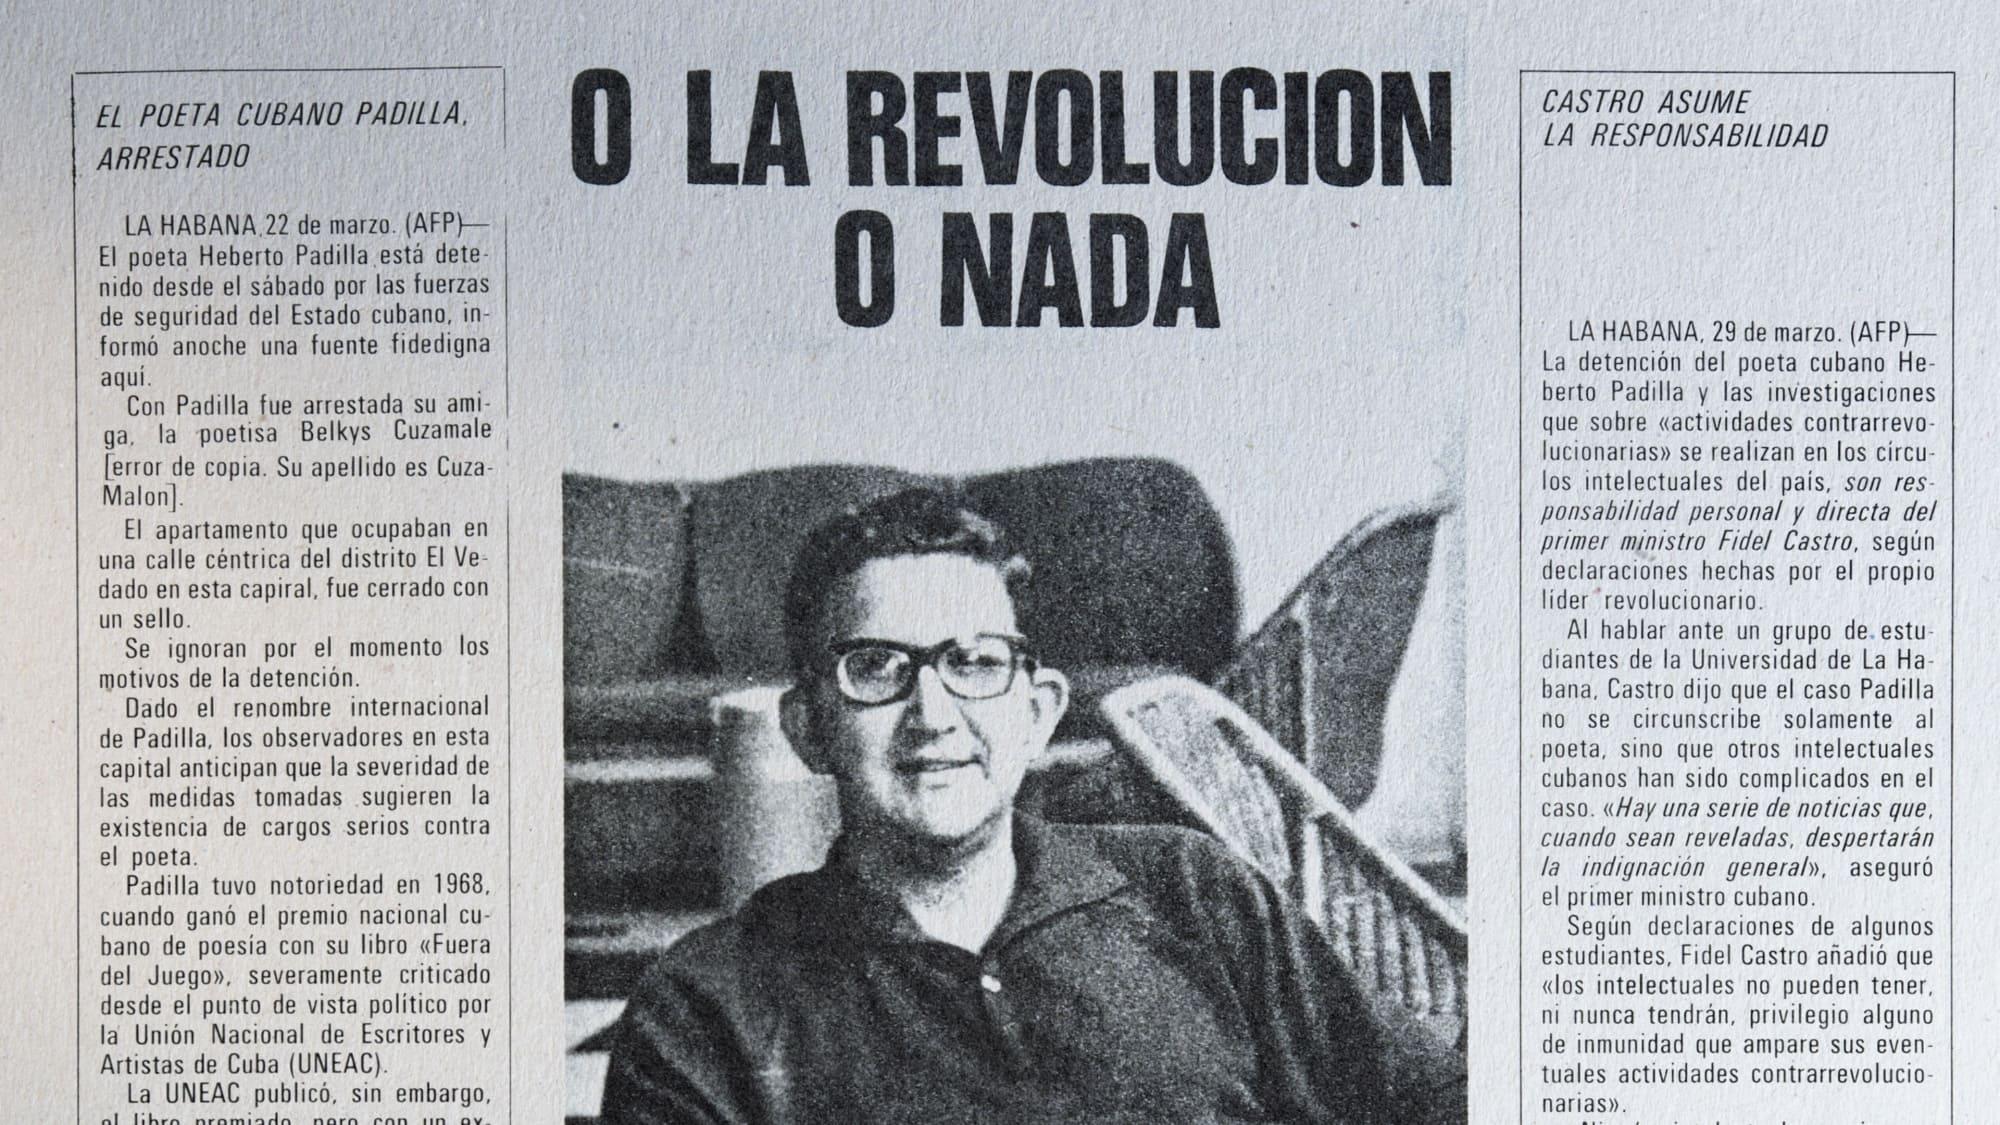 Gabriel García Márquez backdrop